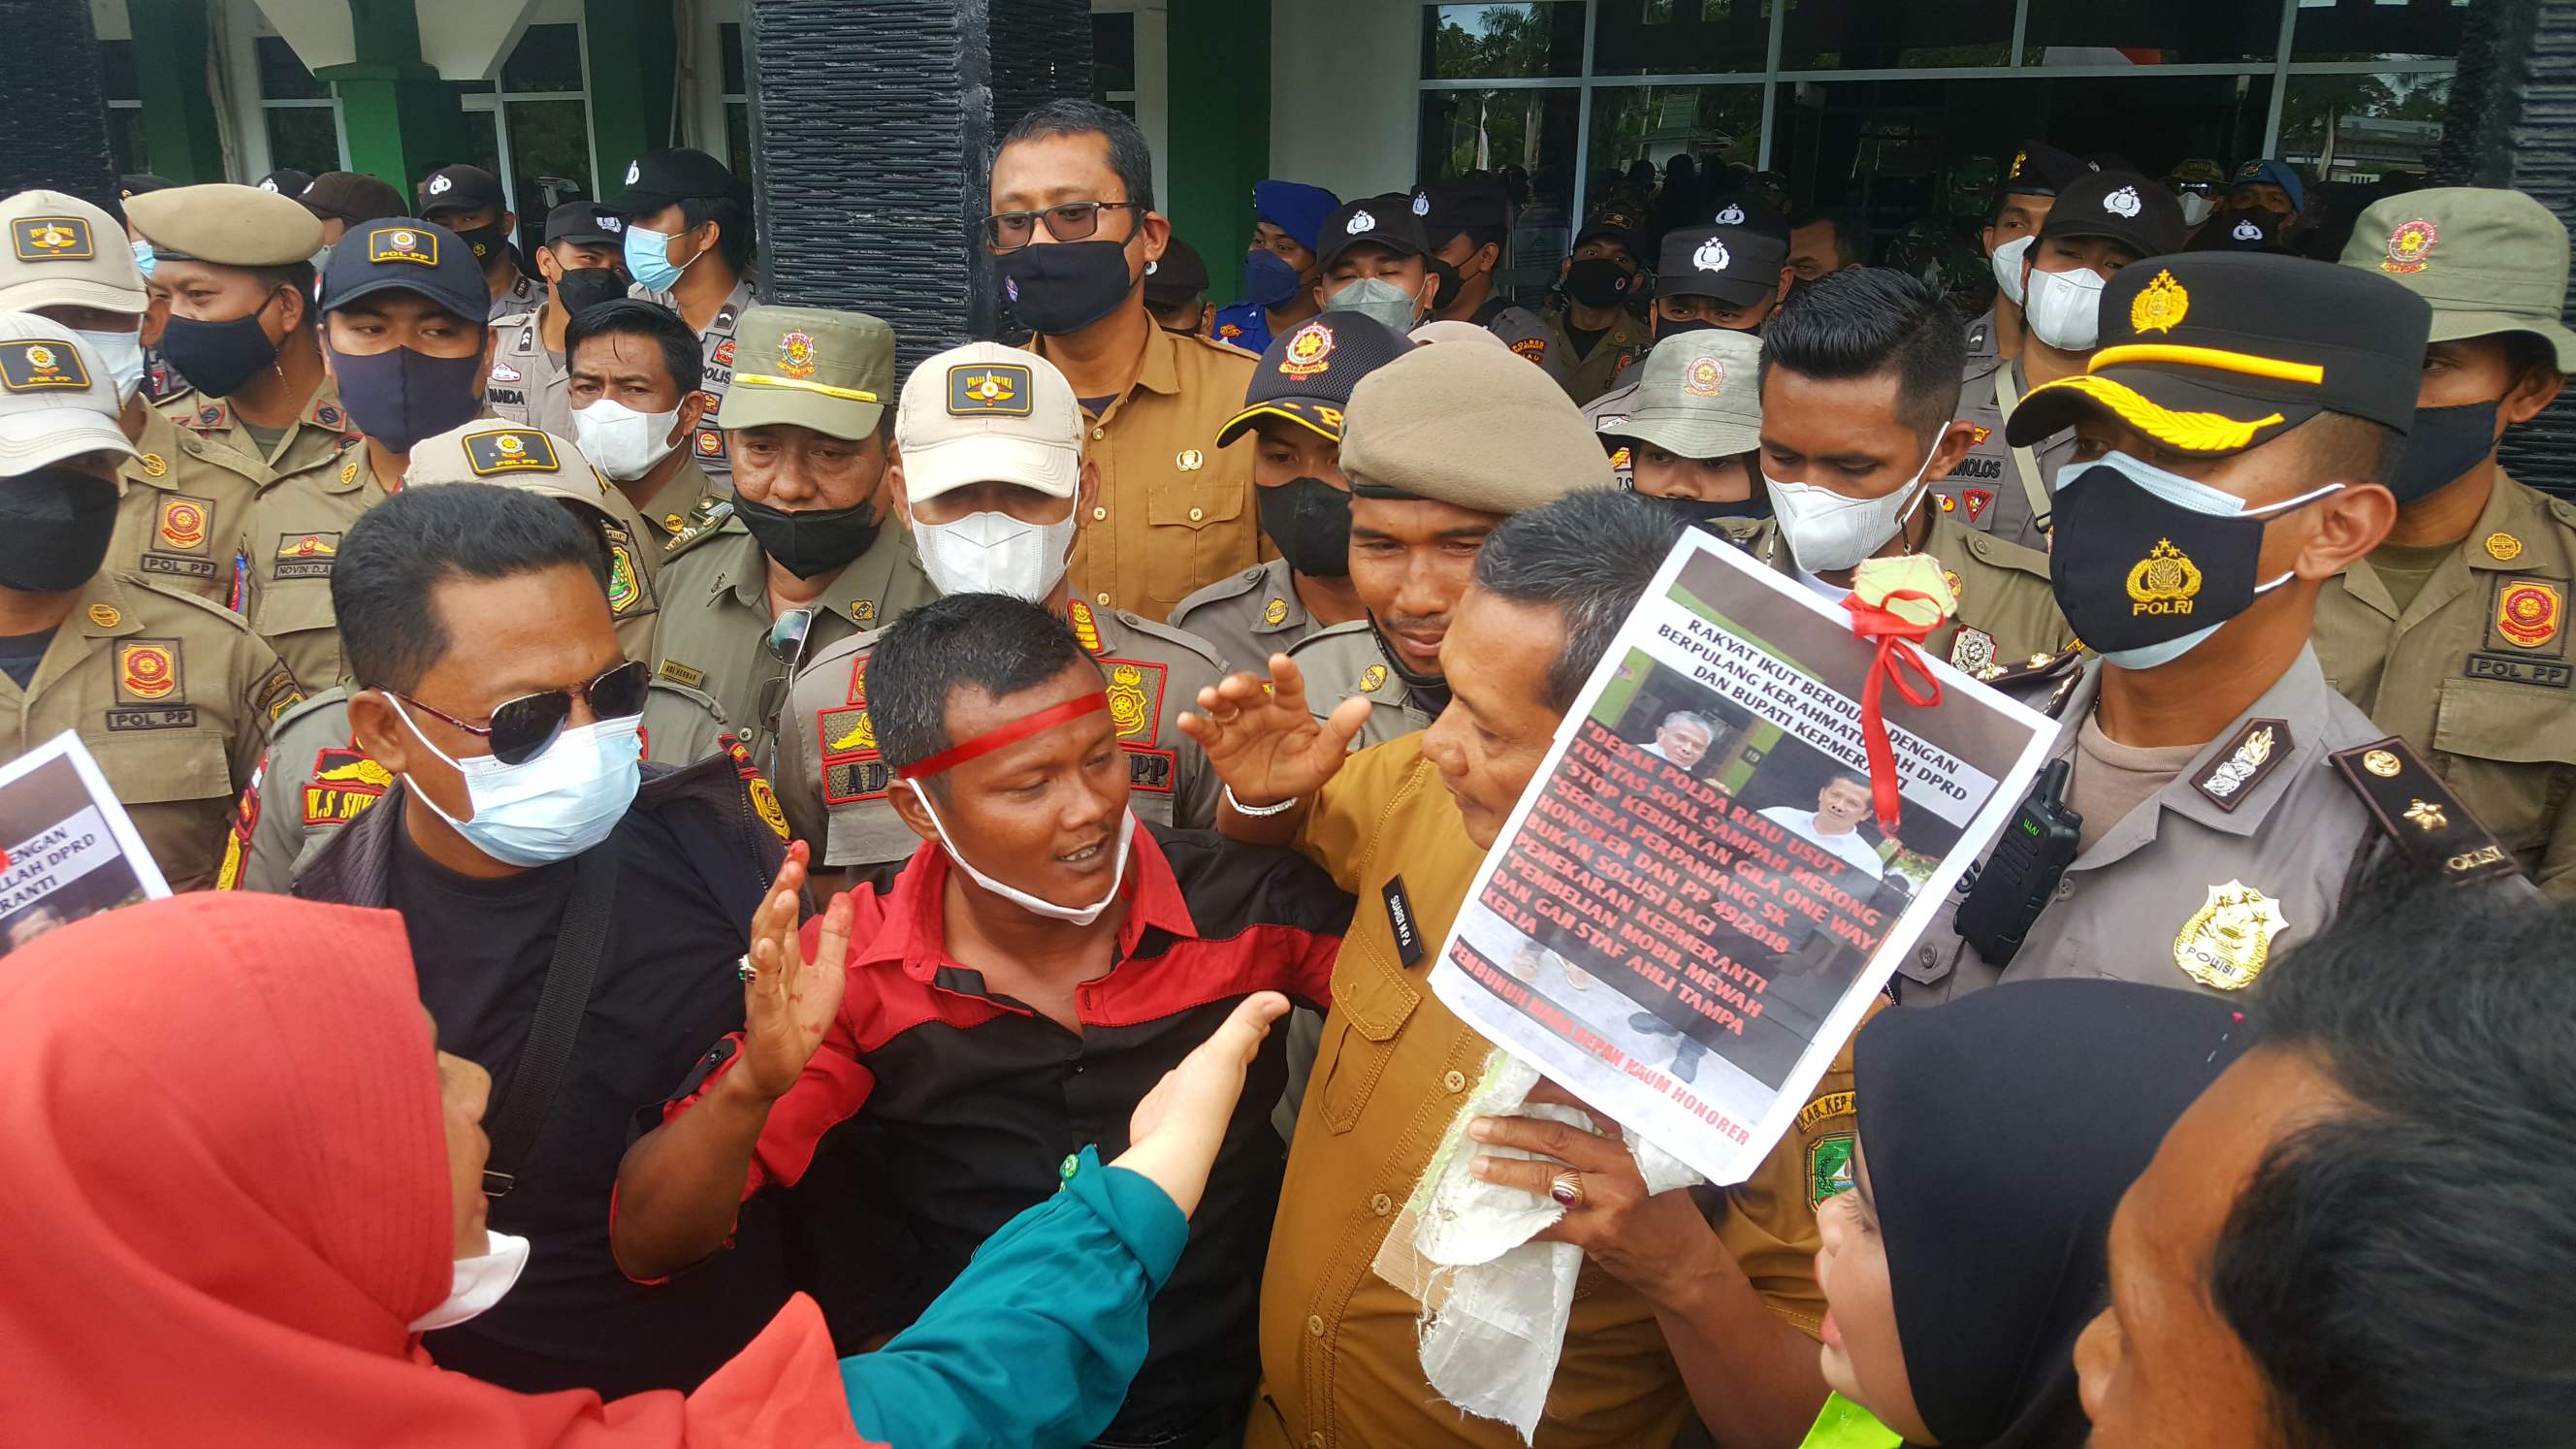 Massa aksi menyerahkan hadiah berupa replika nisan kepada pejabat Pemkab Kepulauan Meranti sebagai simbol matinya demokrasi